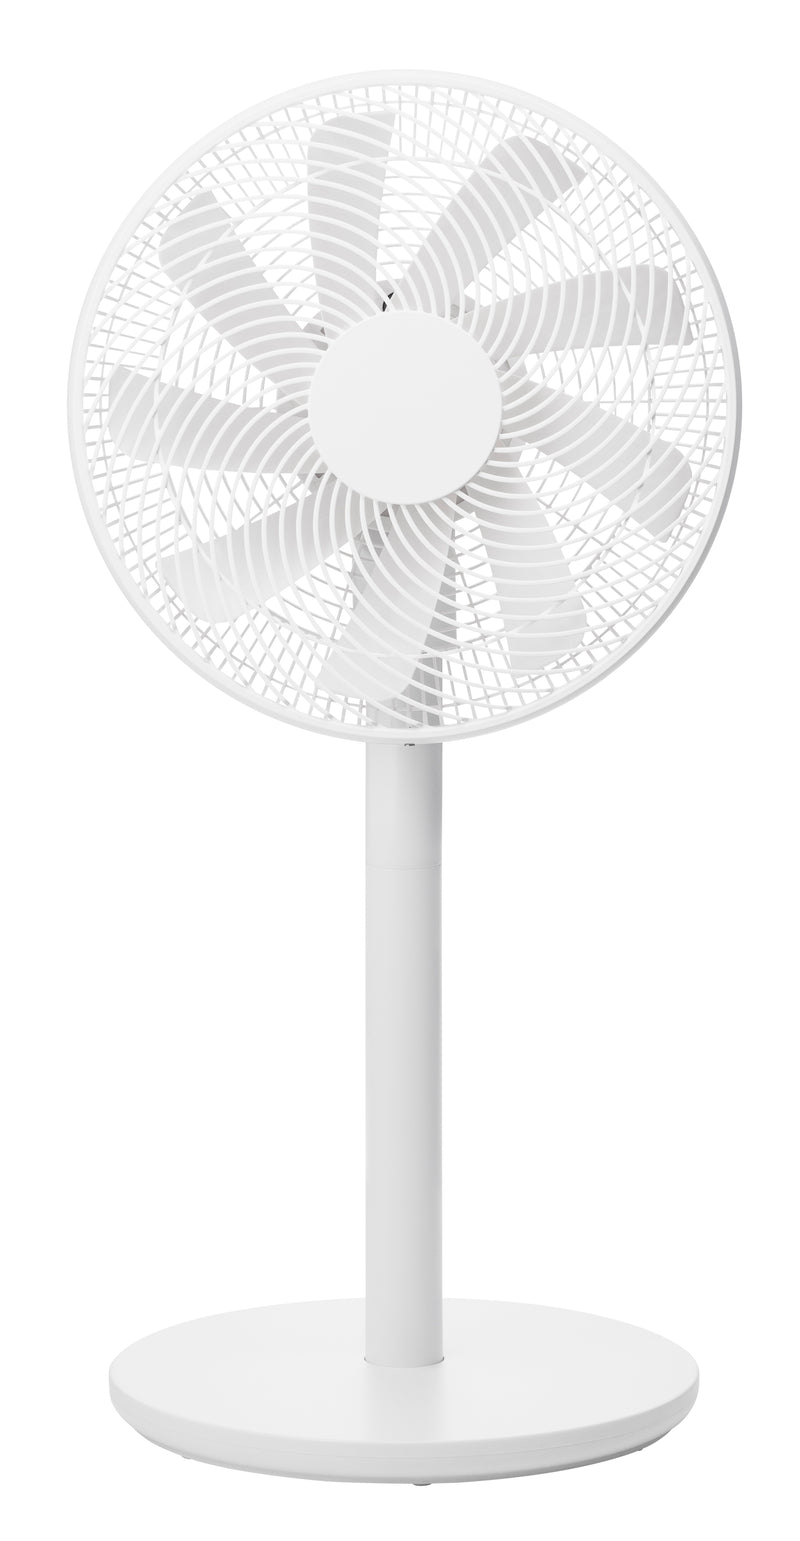 Plus Minus Zero XQS-G630 3D DC Circulation Fan